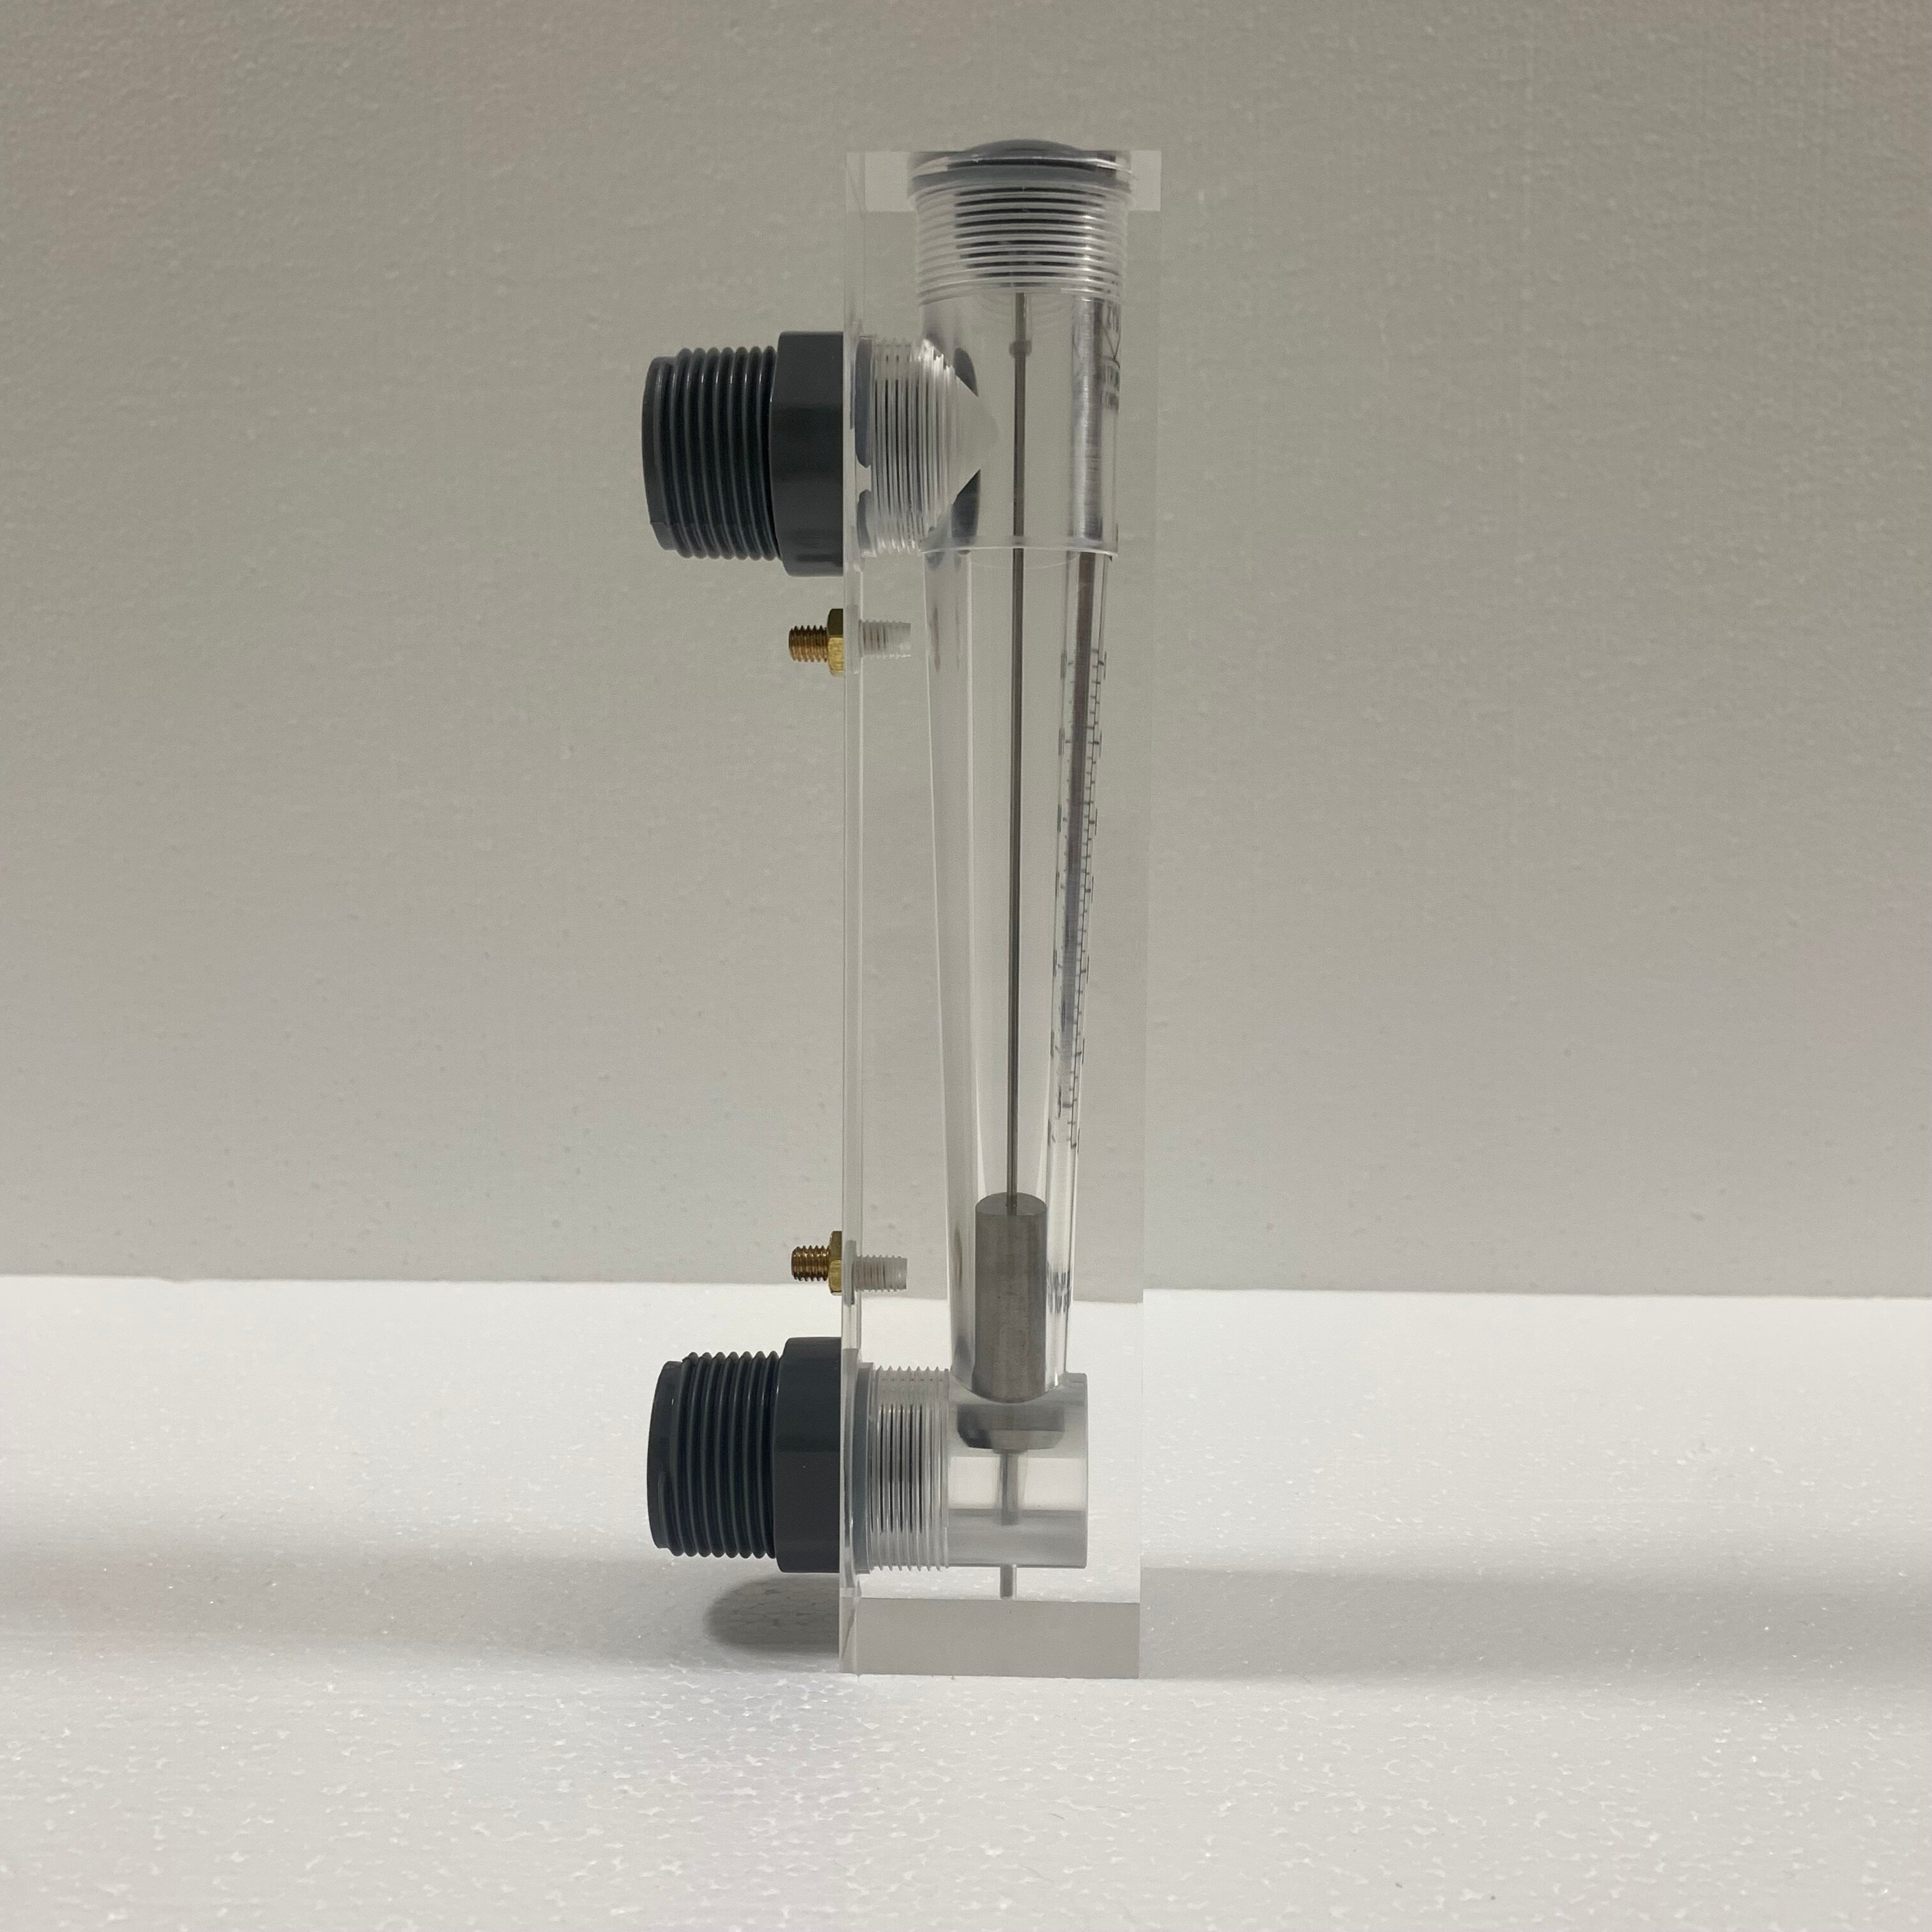 Ротаметр (расходомер) воды LZM-25Z, диапазон измерения 5-25 г/м и 10-130 л/м, акриловый корпус, фитинги ПВХ, без регулятора расхода - фотография № 4